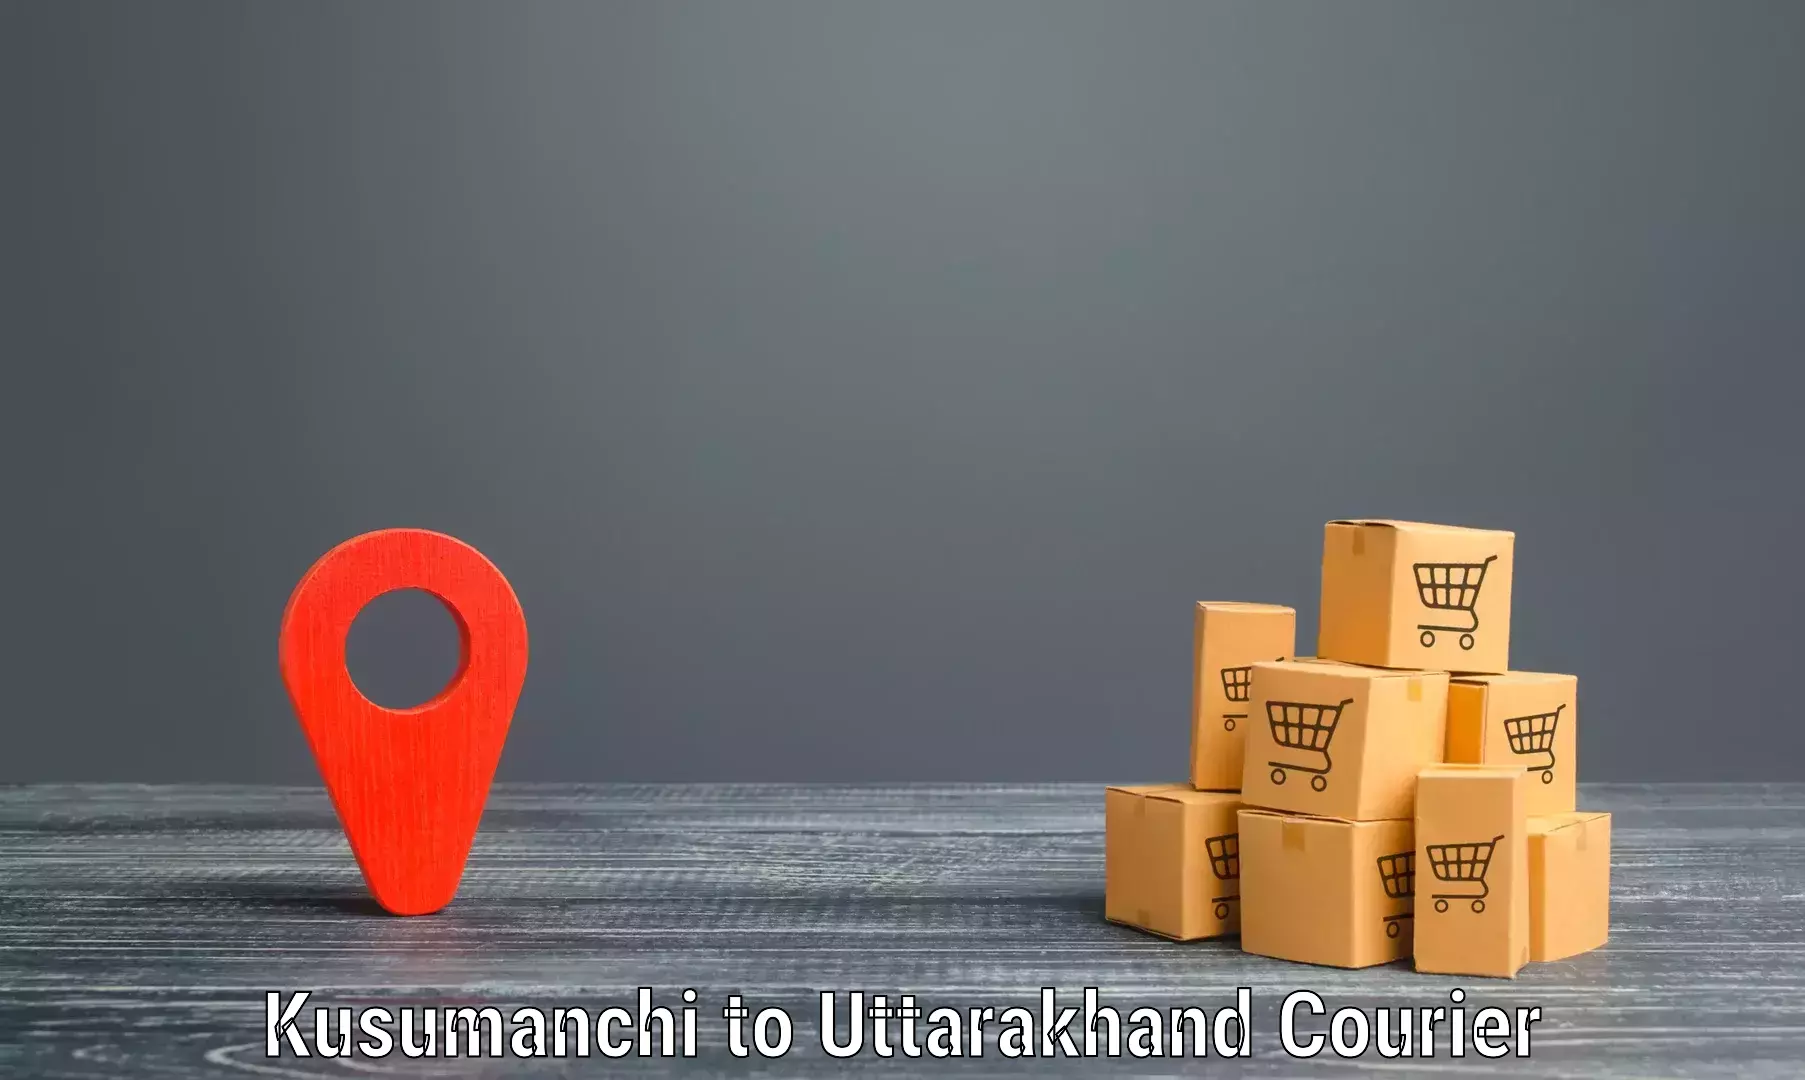 Premium courier solutions Kusumanchi to Dehradun